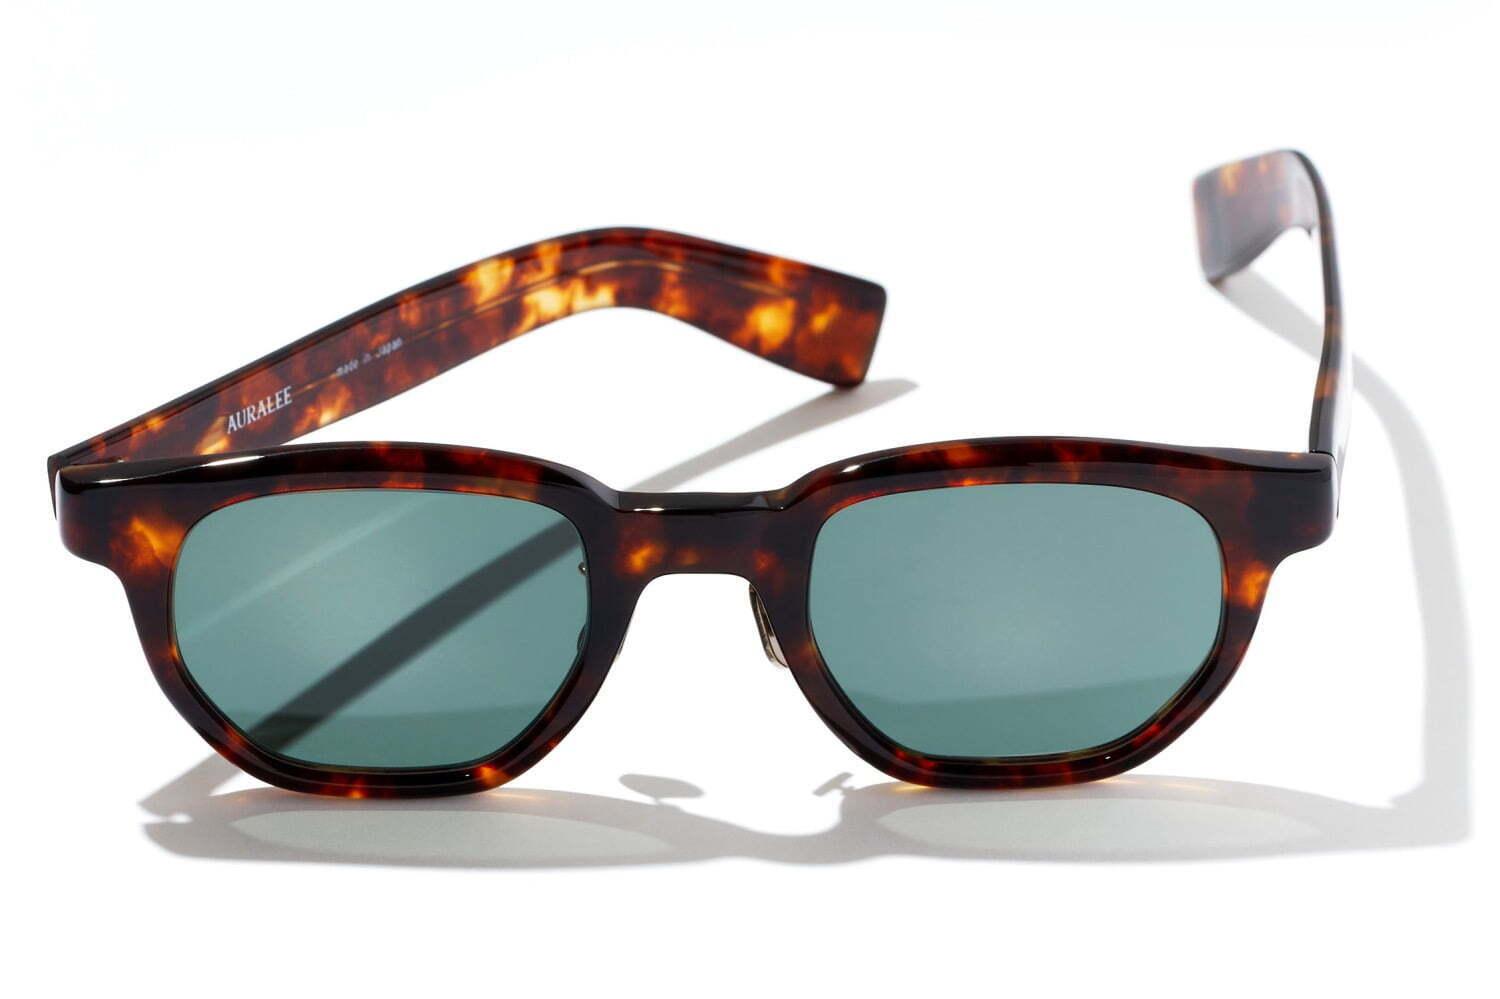 オーラリー“ヘキサゴン型レンズ”のサングラス、アイヴァン 7285のデザイナー中川浩考とコラボ 